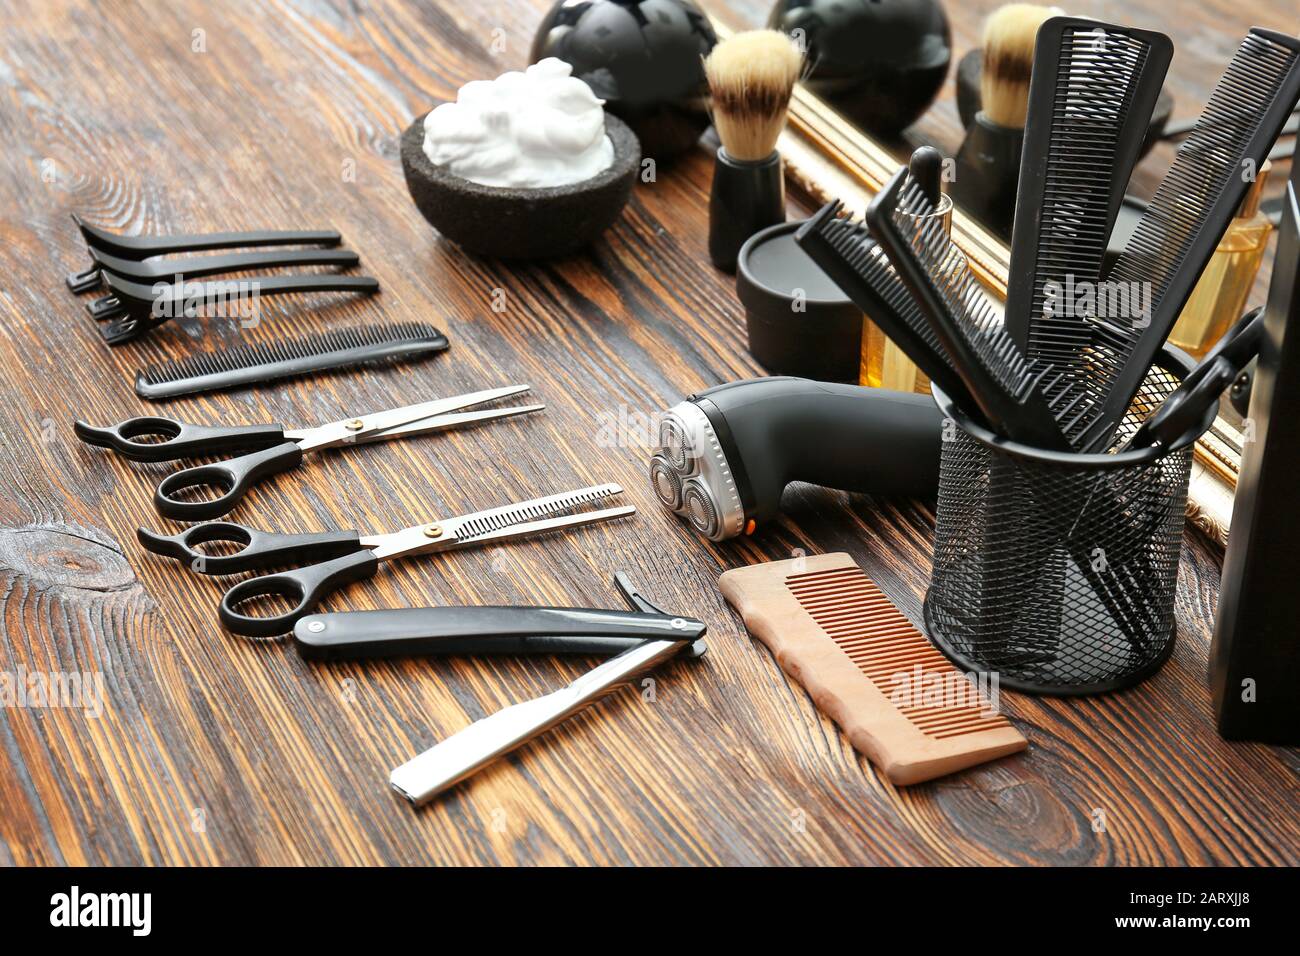 professional barber tools